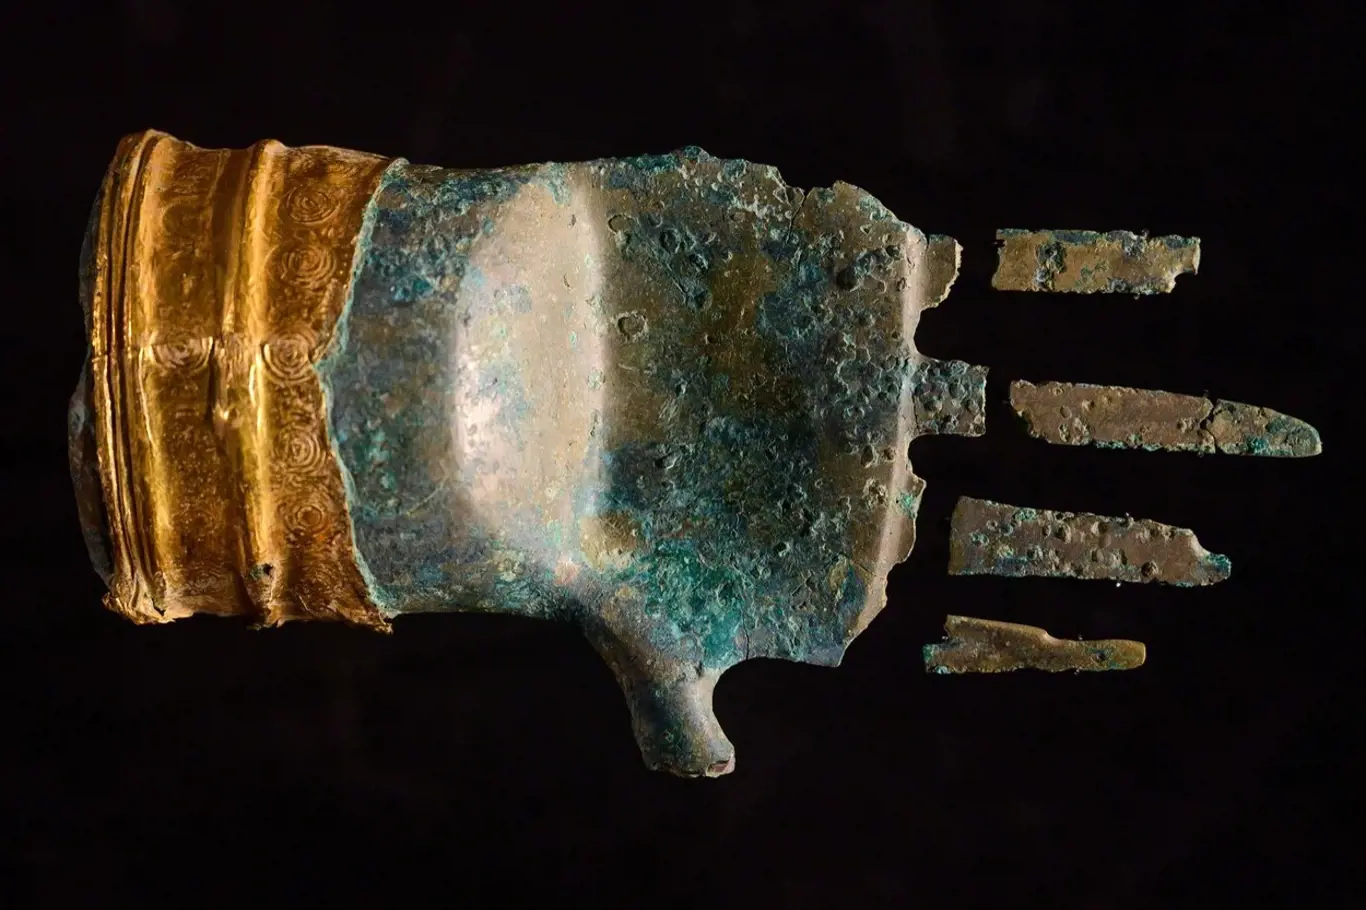 Stáří bronzové ruky je odhadováno na 3 500 let. Součástí velmi neobvyklého artefaktu je zlatá manžeta a ruka byla dříve zřejmě součástí žezla.